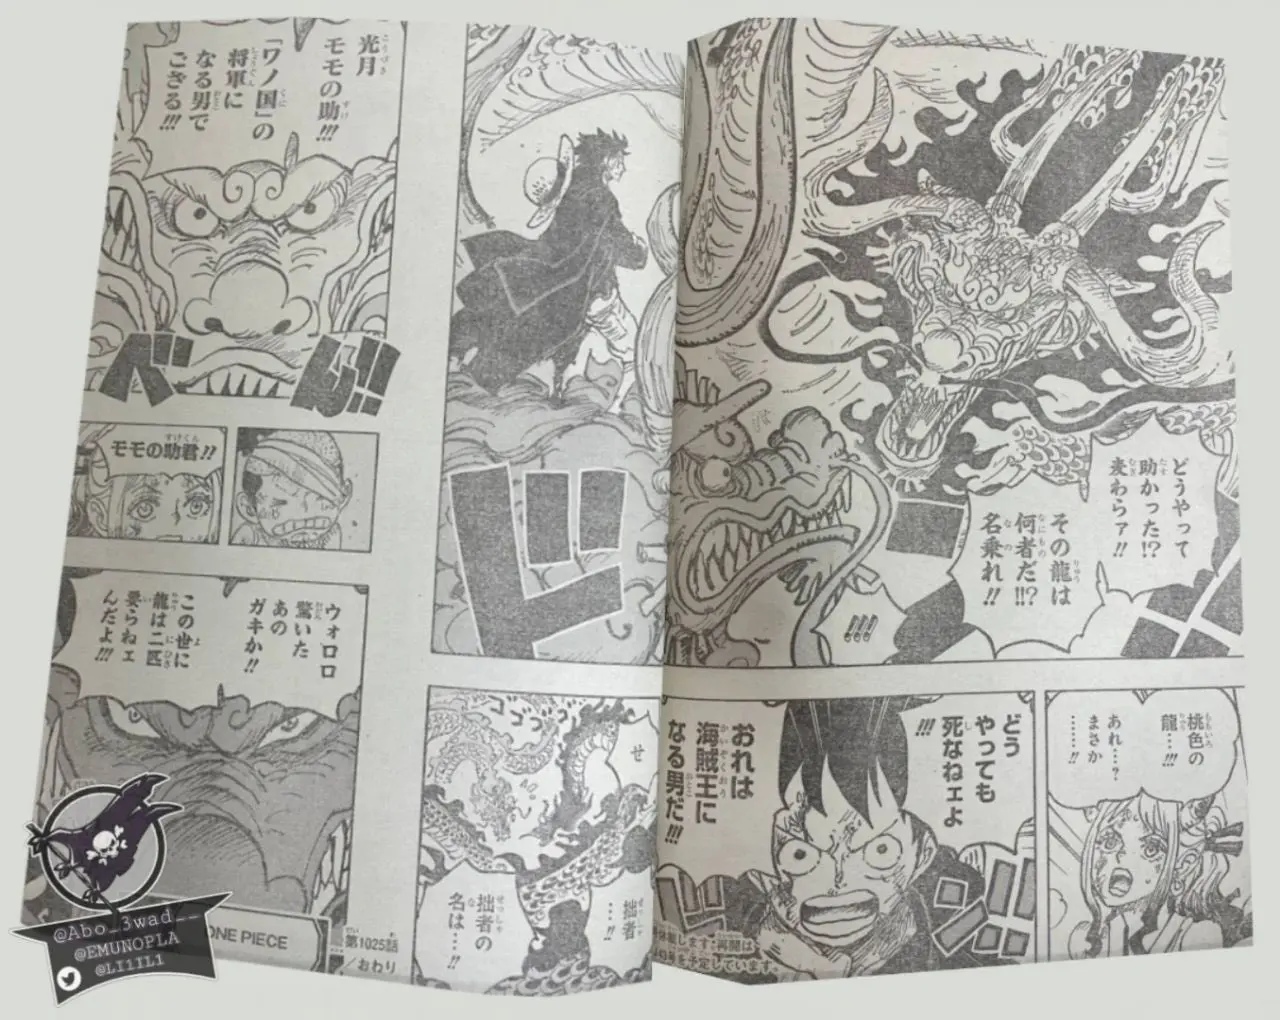 One Piece Manga 1025 Spoiler 014.jpg One Piece 1025 Spoilers: Luffy & Yamato Vs Kaido!